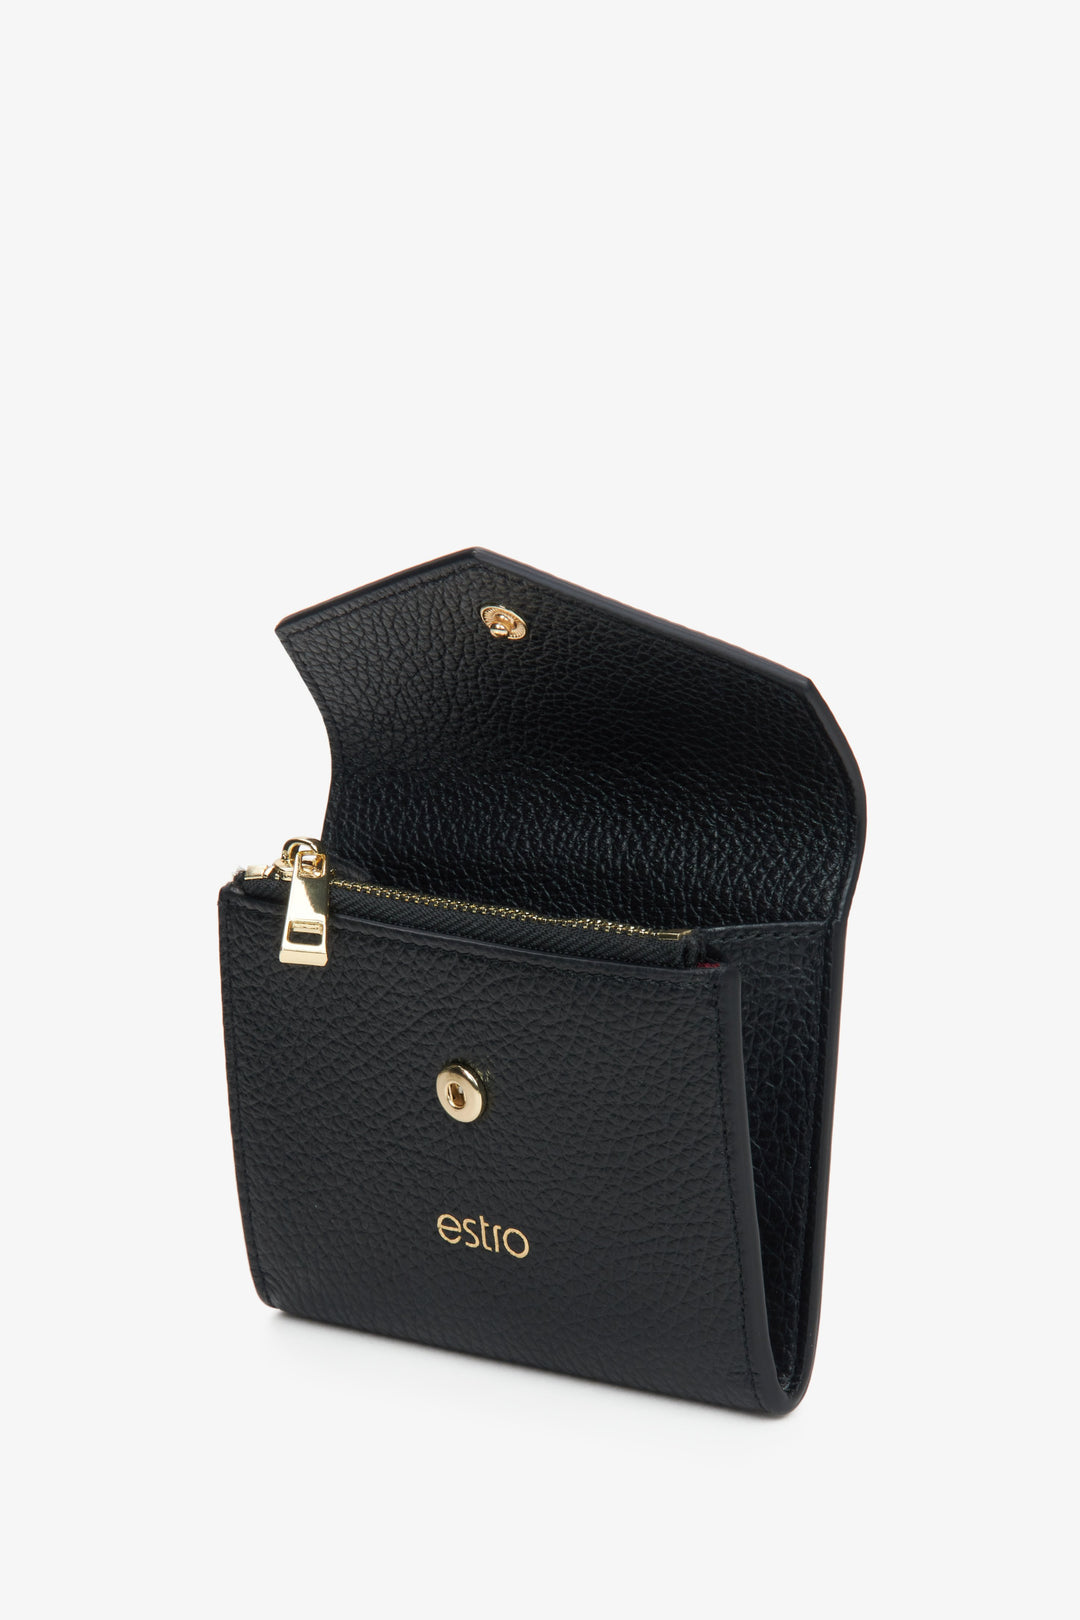 Czarny skórzany portfel damski Estro - prezentacja modelu po otwarciu.